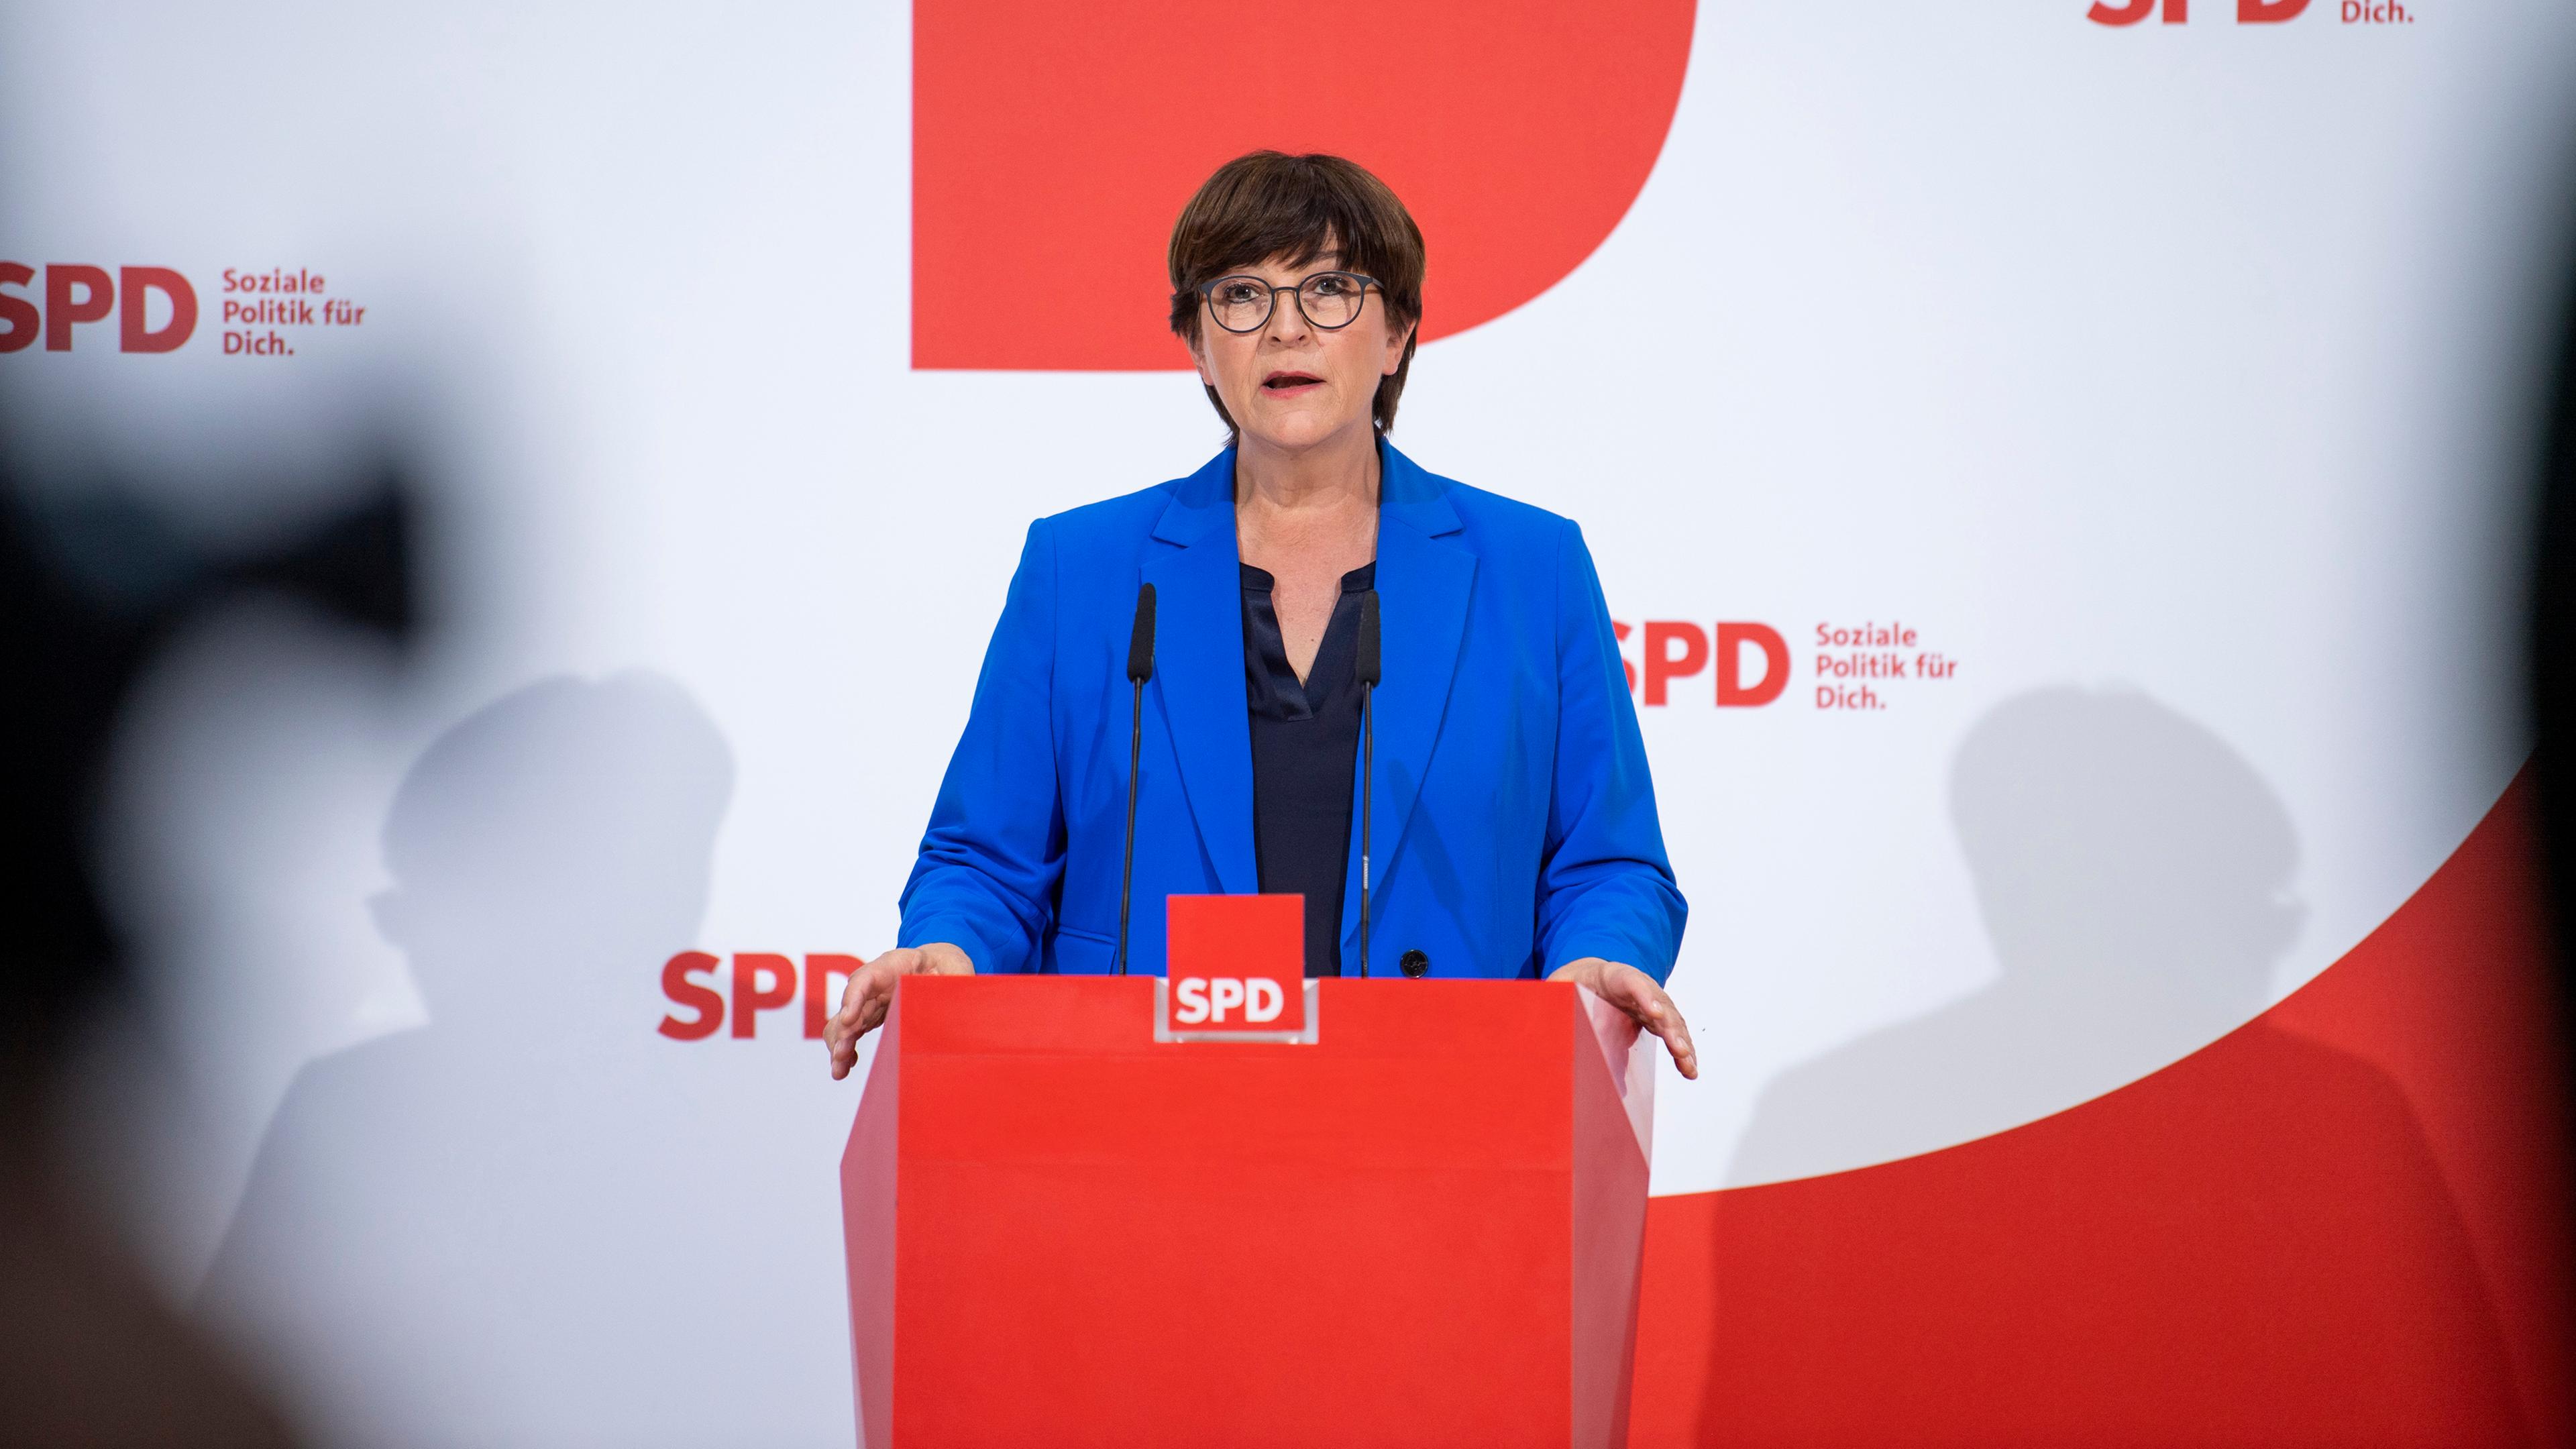 SPD-Bundesvorsitzende Saskia Äjd75+sken während einer Pressekonferenz im Berliner Willy-Brandt-Haus.